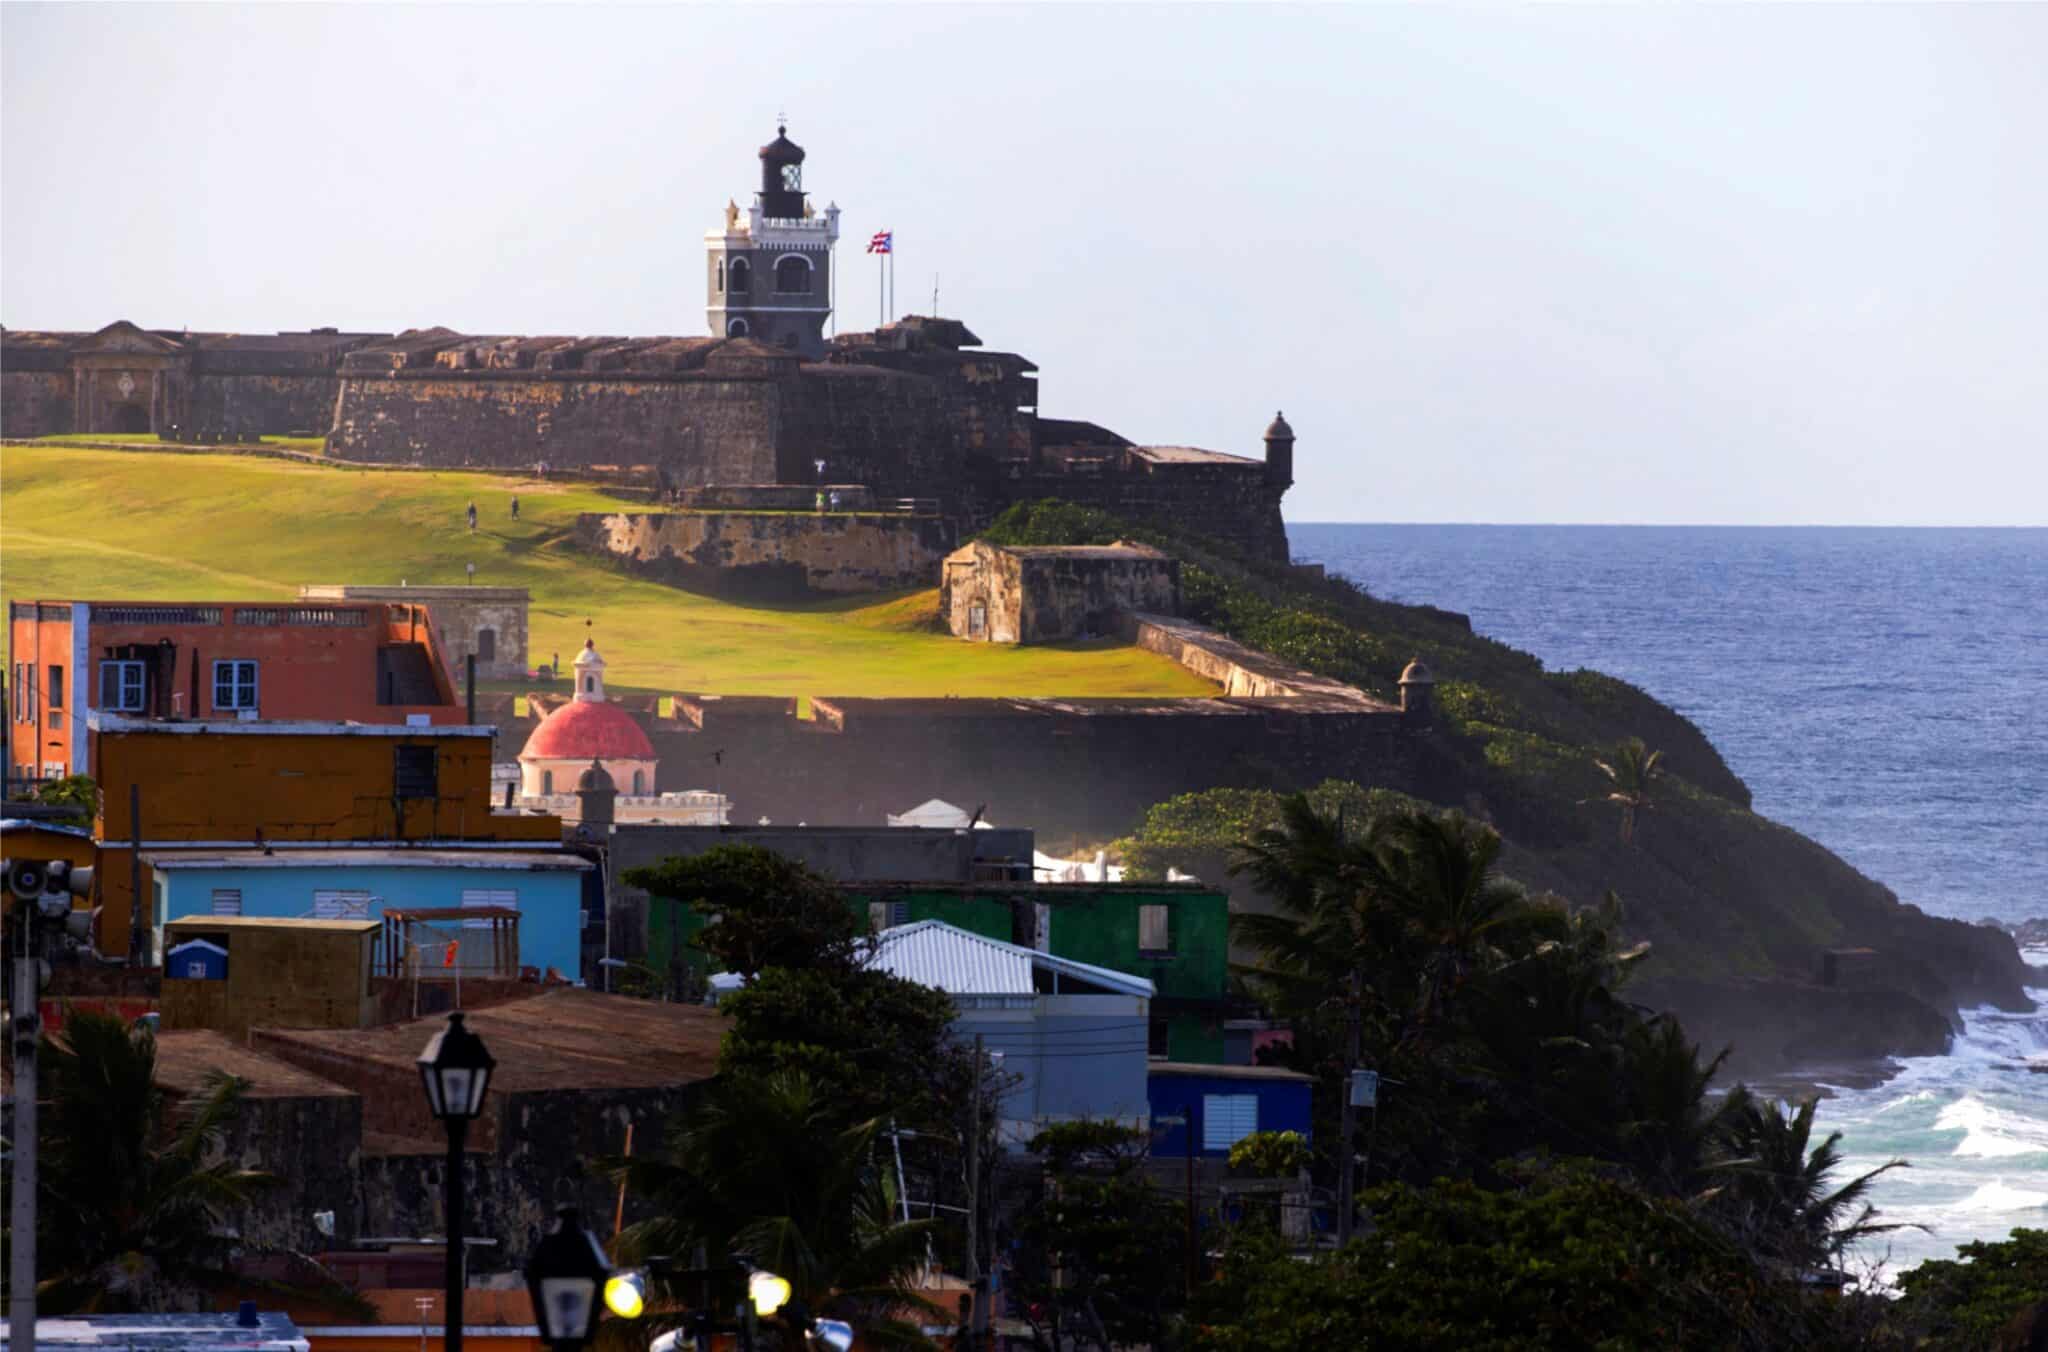 Fotografía donde se aprecia una parte del barrio La Perla y al fondo el castillo de San Felipe del Morro, conocido simplemente como El Morro, en el Viejo San Juan